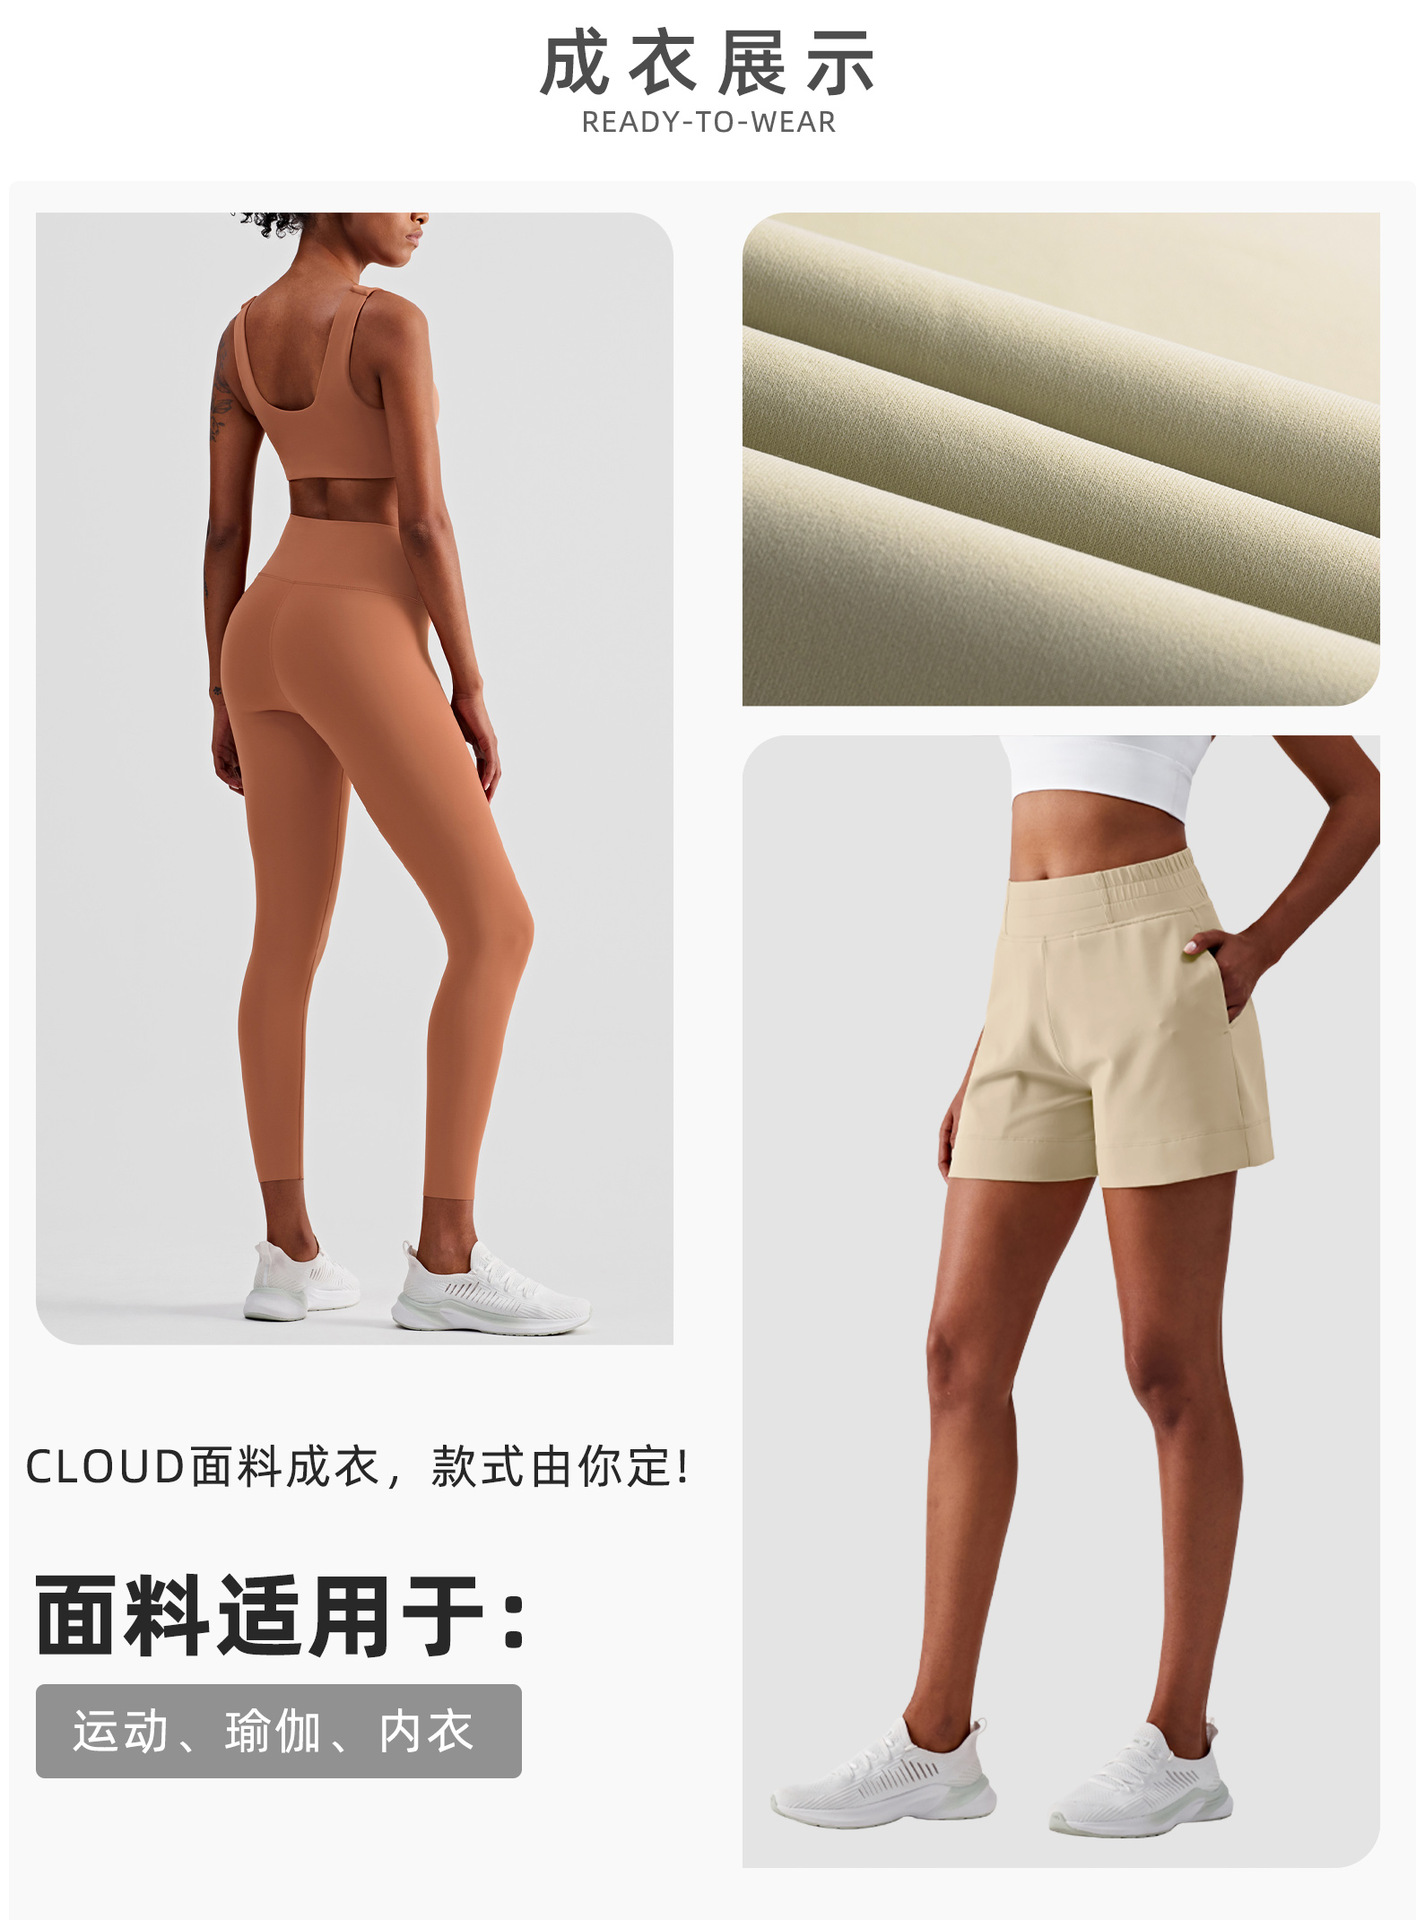 Clothing display.jpg